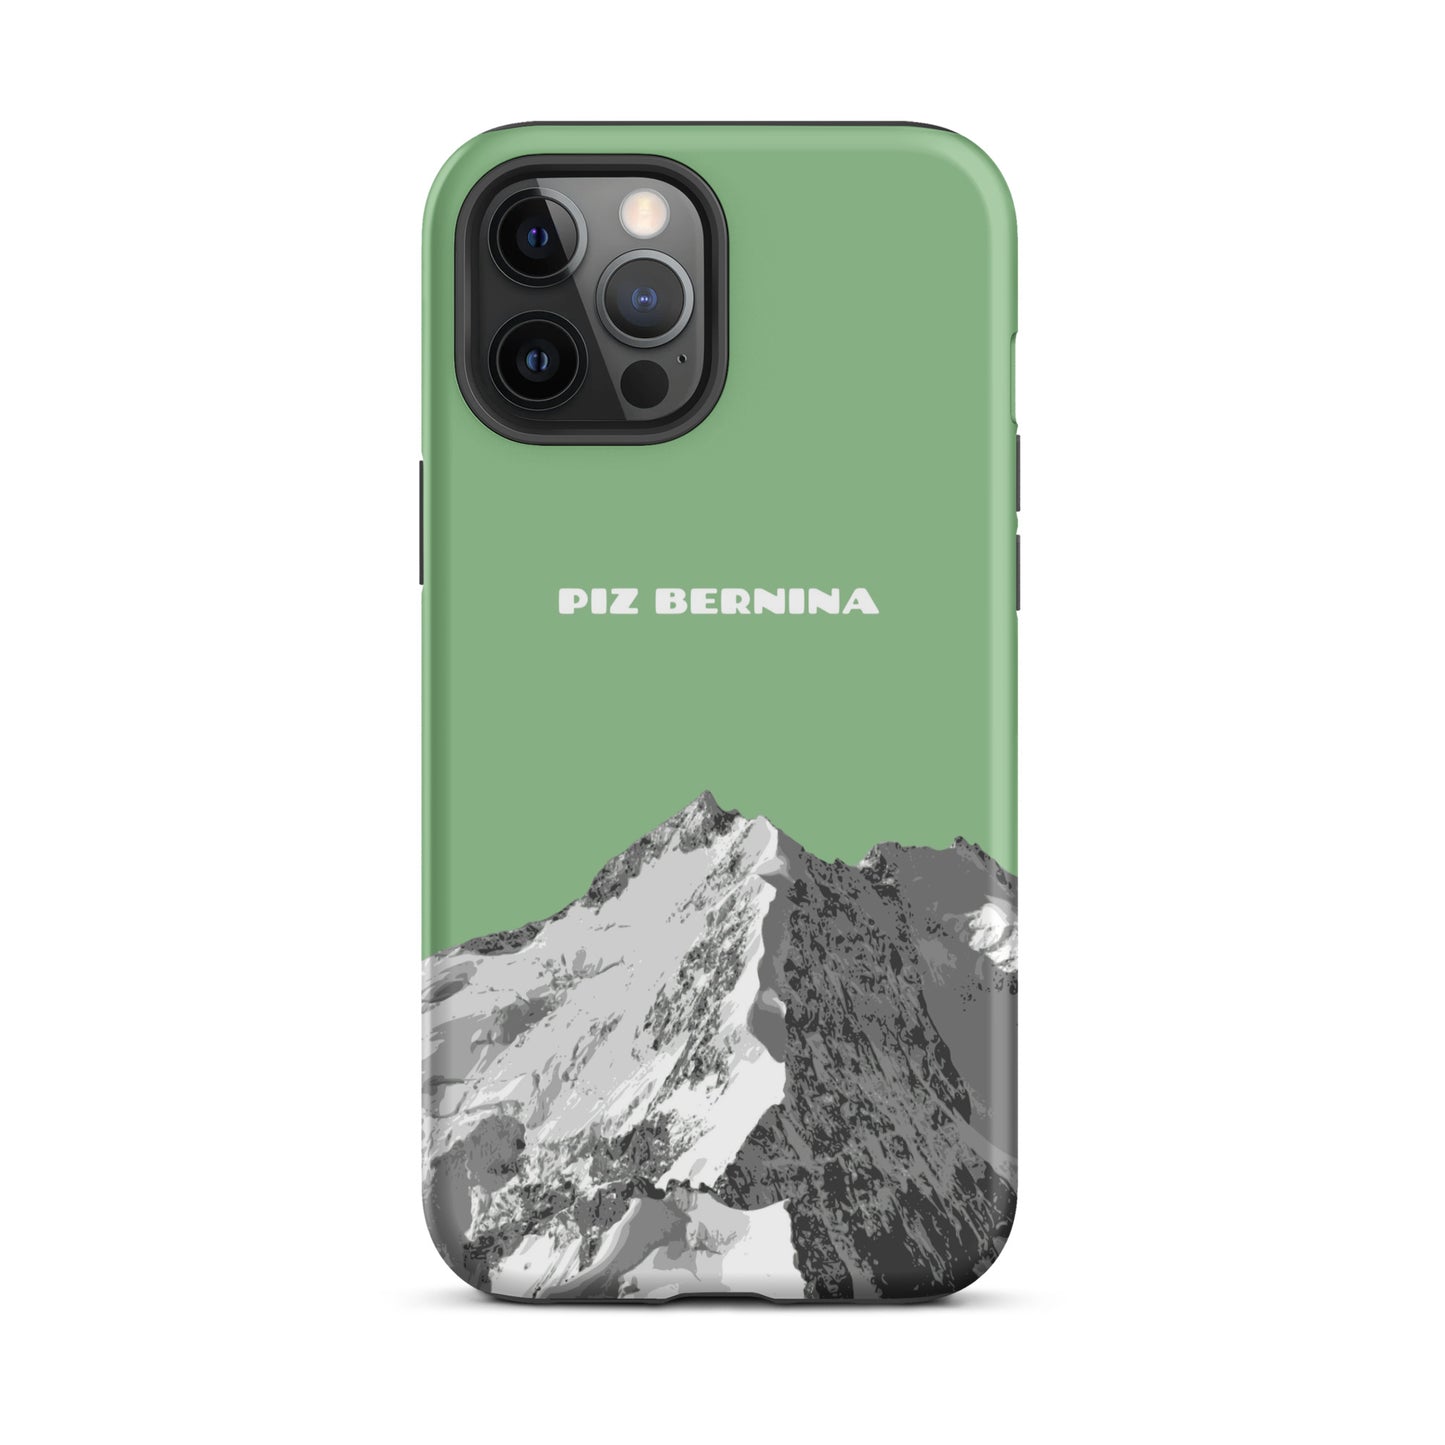 Hülle für das iPhone 12 Pro Max von Apple in der Farbe Hellgrün, dass den Piz Bernina in Graubünden zeigt.